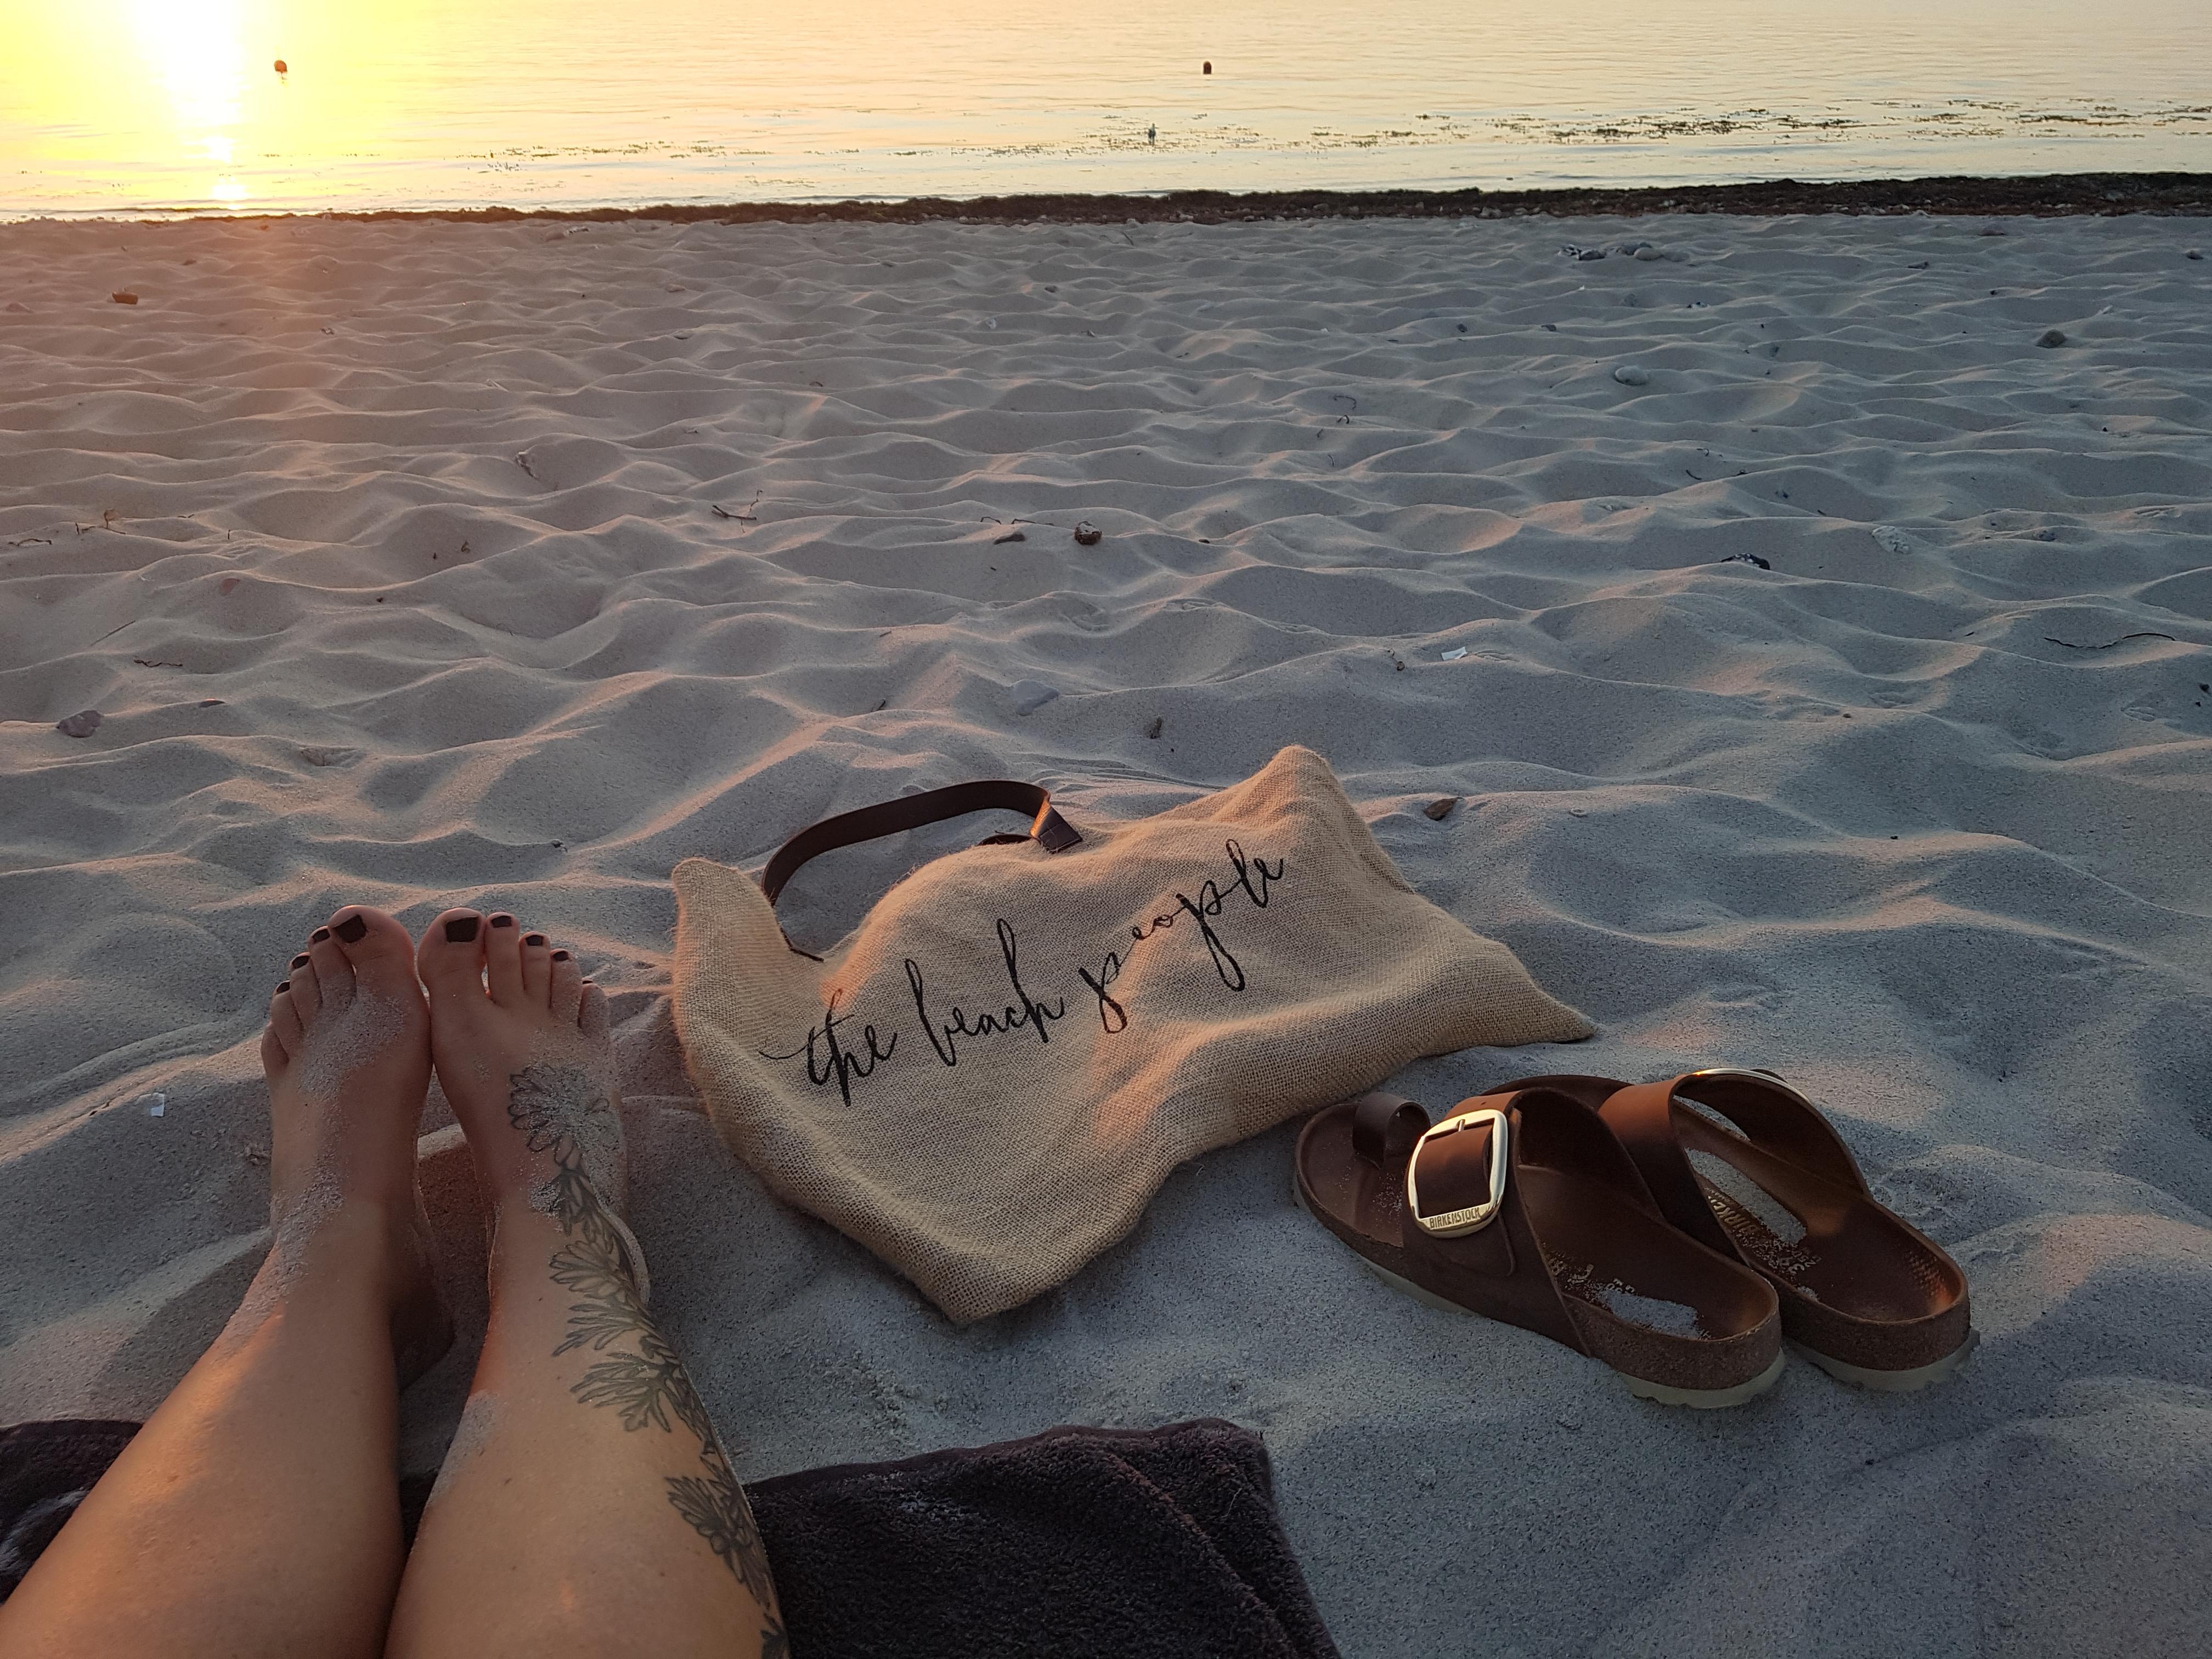 thebeachpeople ganz viel Sand auf meiner Haut ⚓

#urlaub#strand#meer#sand#tattoo
#summervibs#endlesssummer

